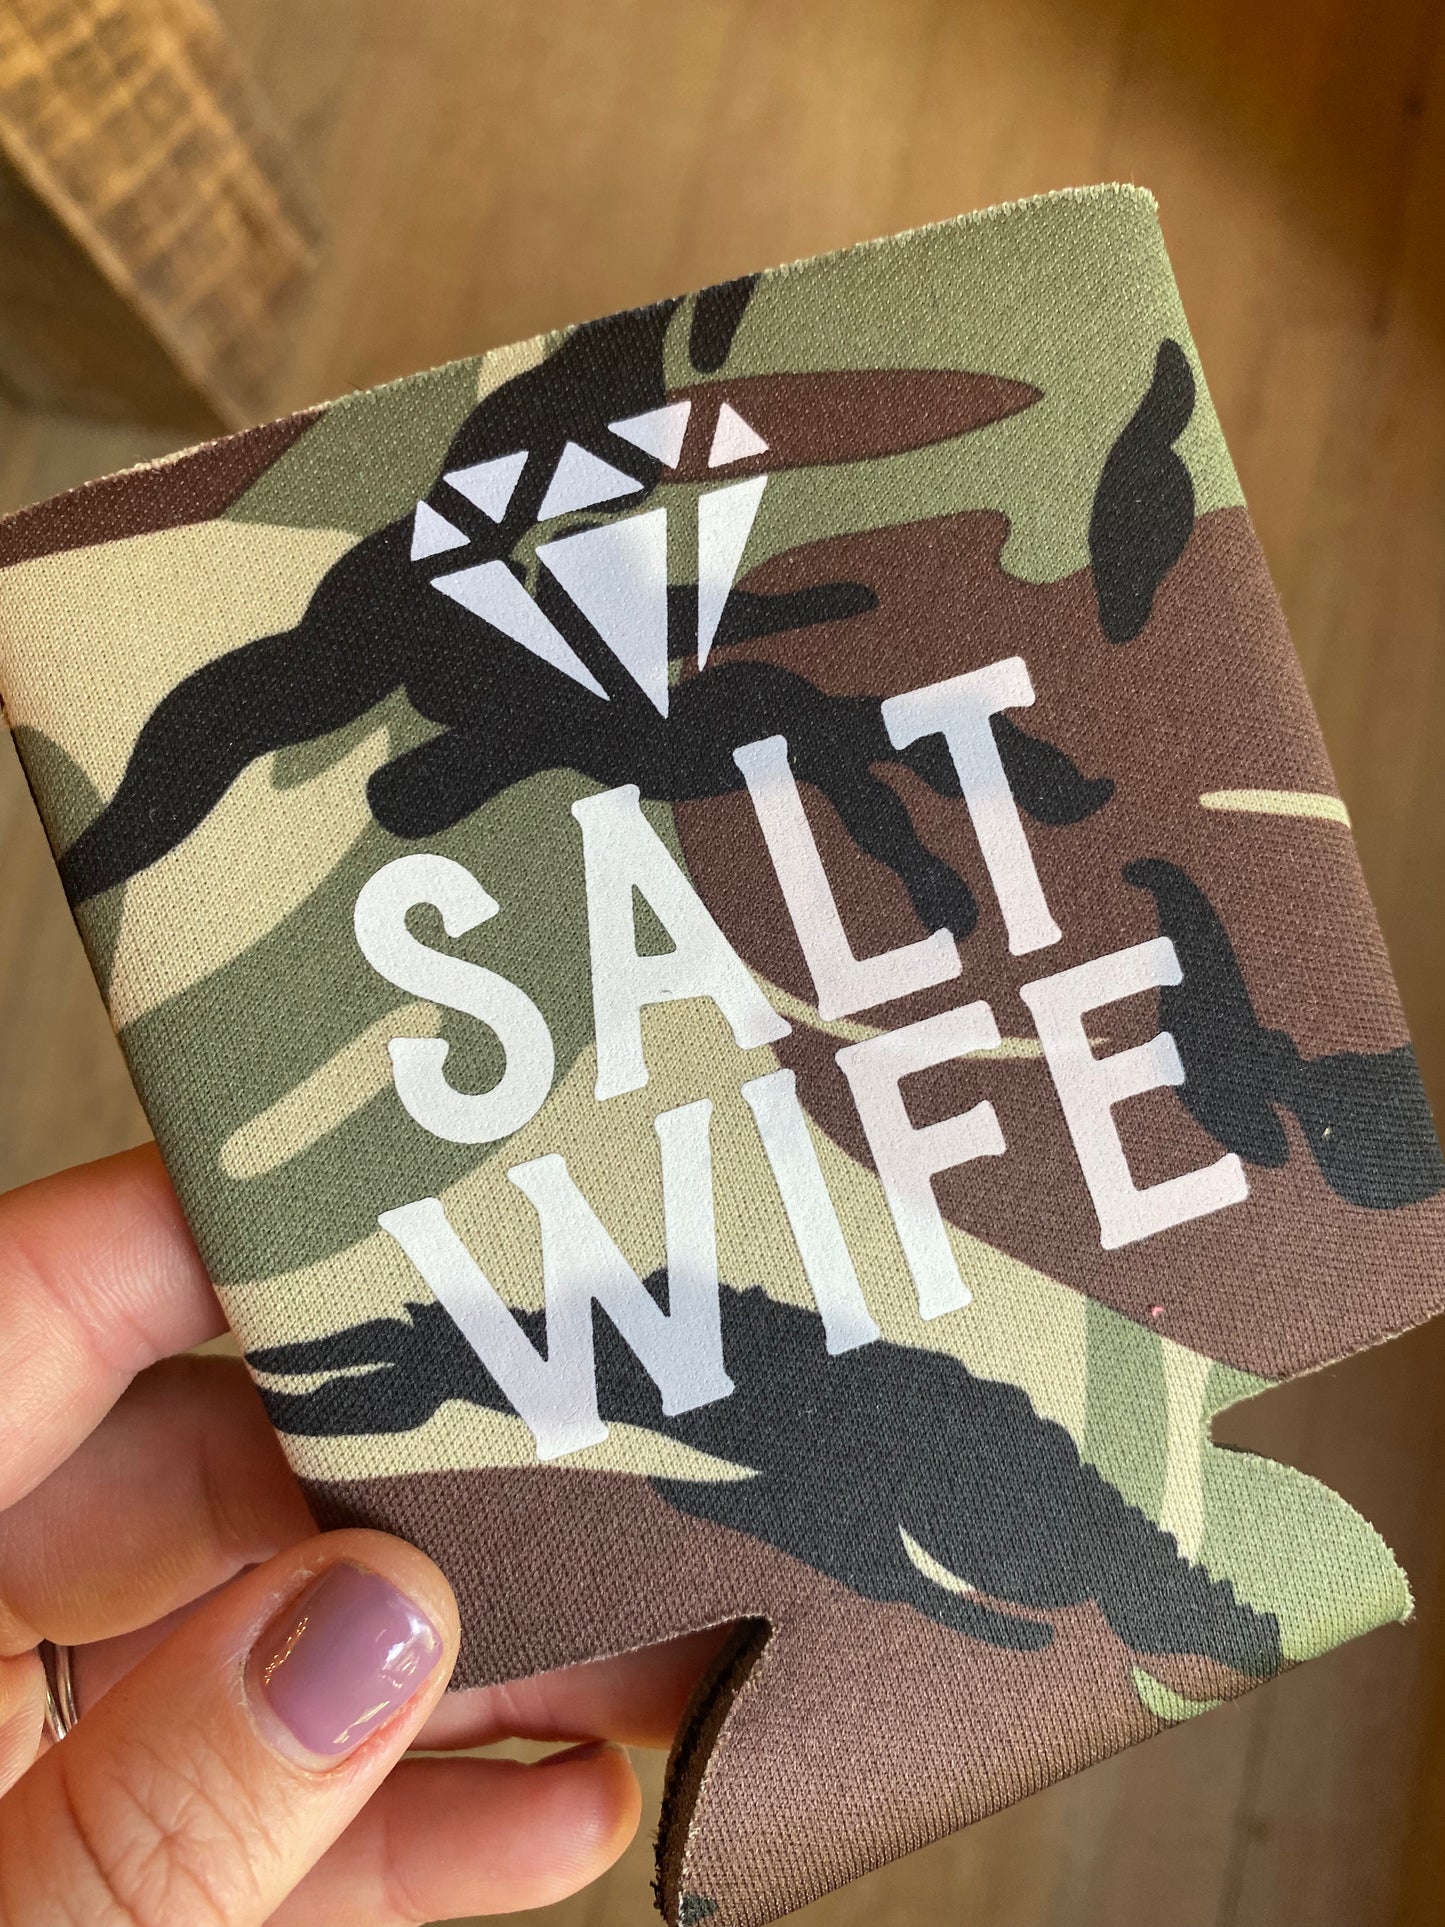 Salt Wife Koozie